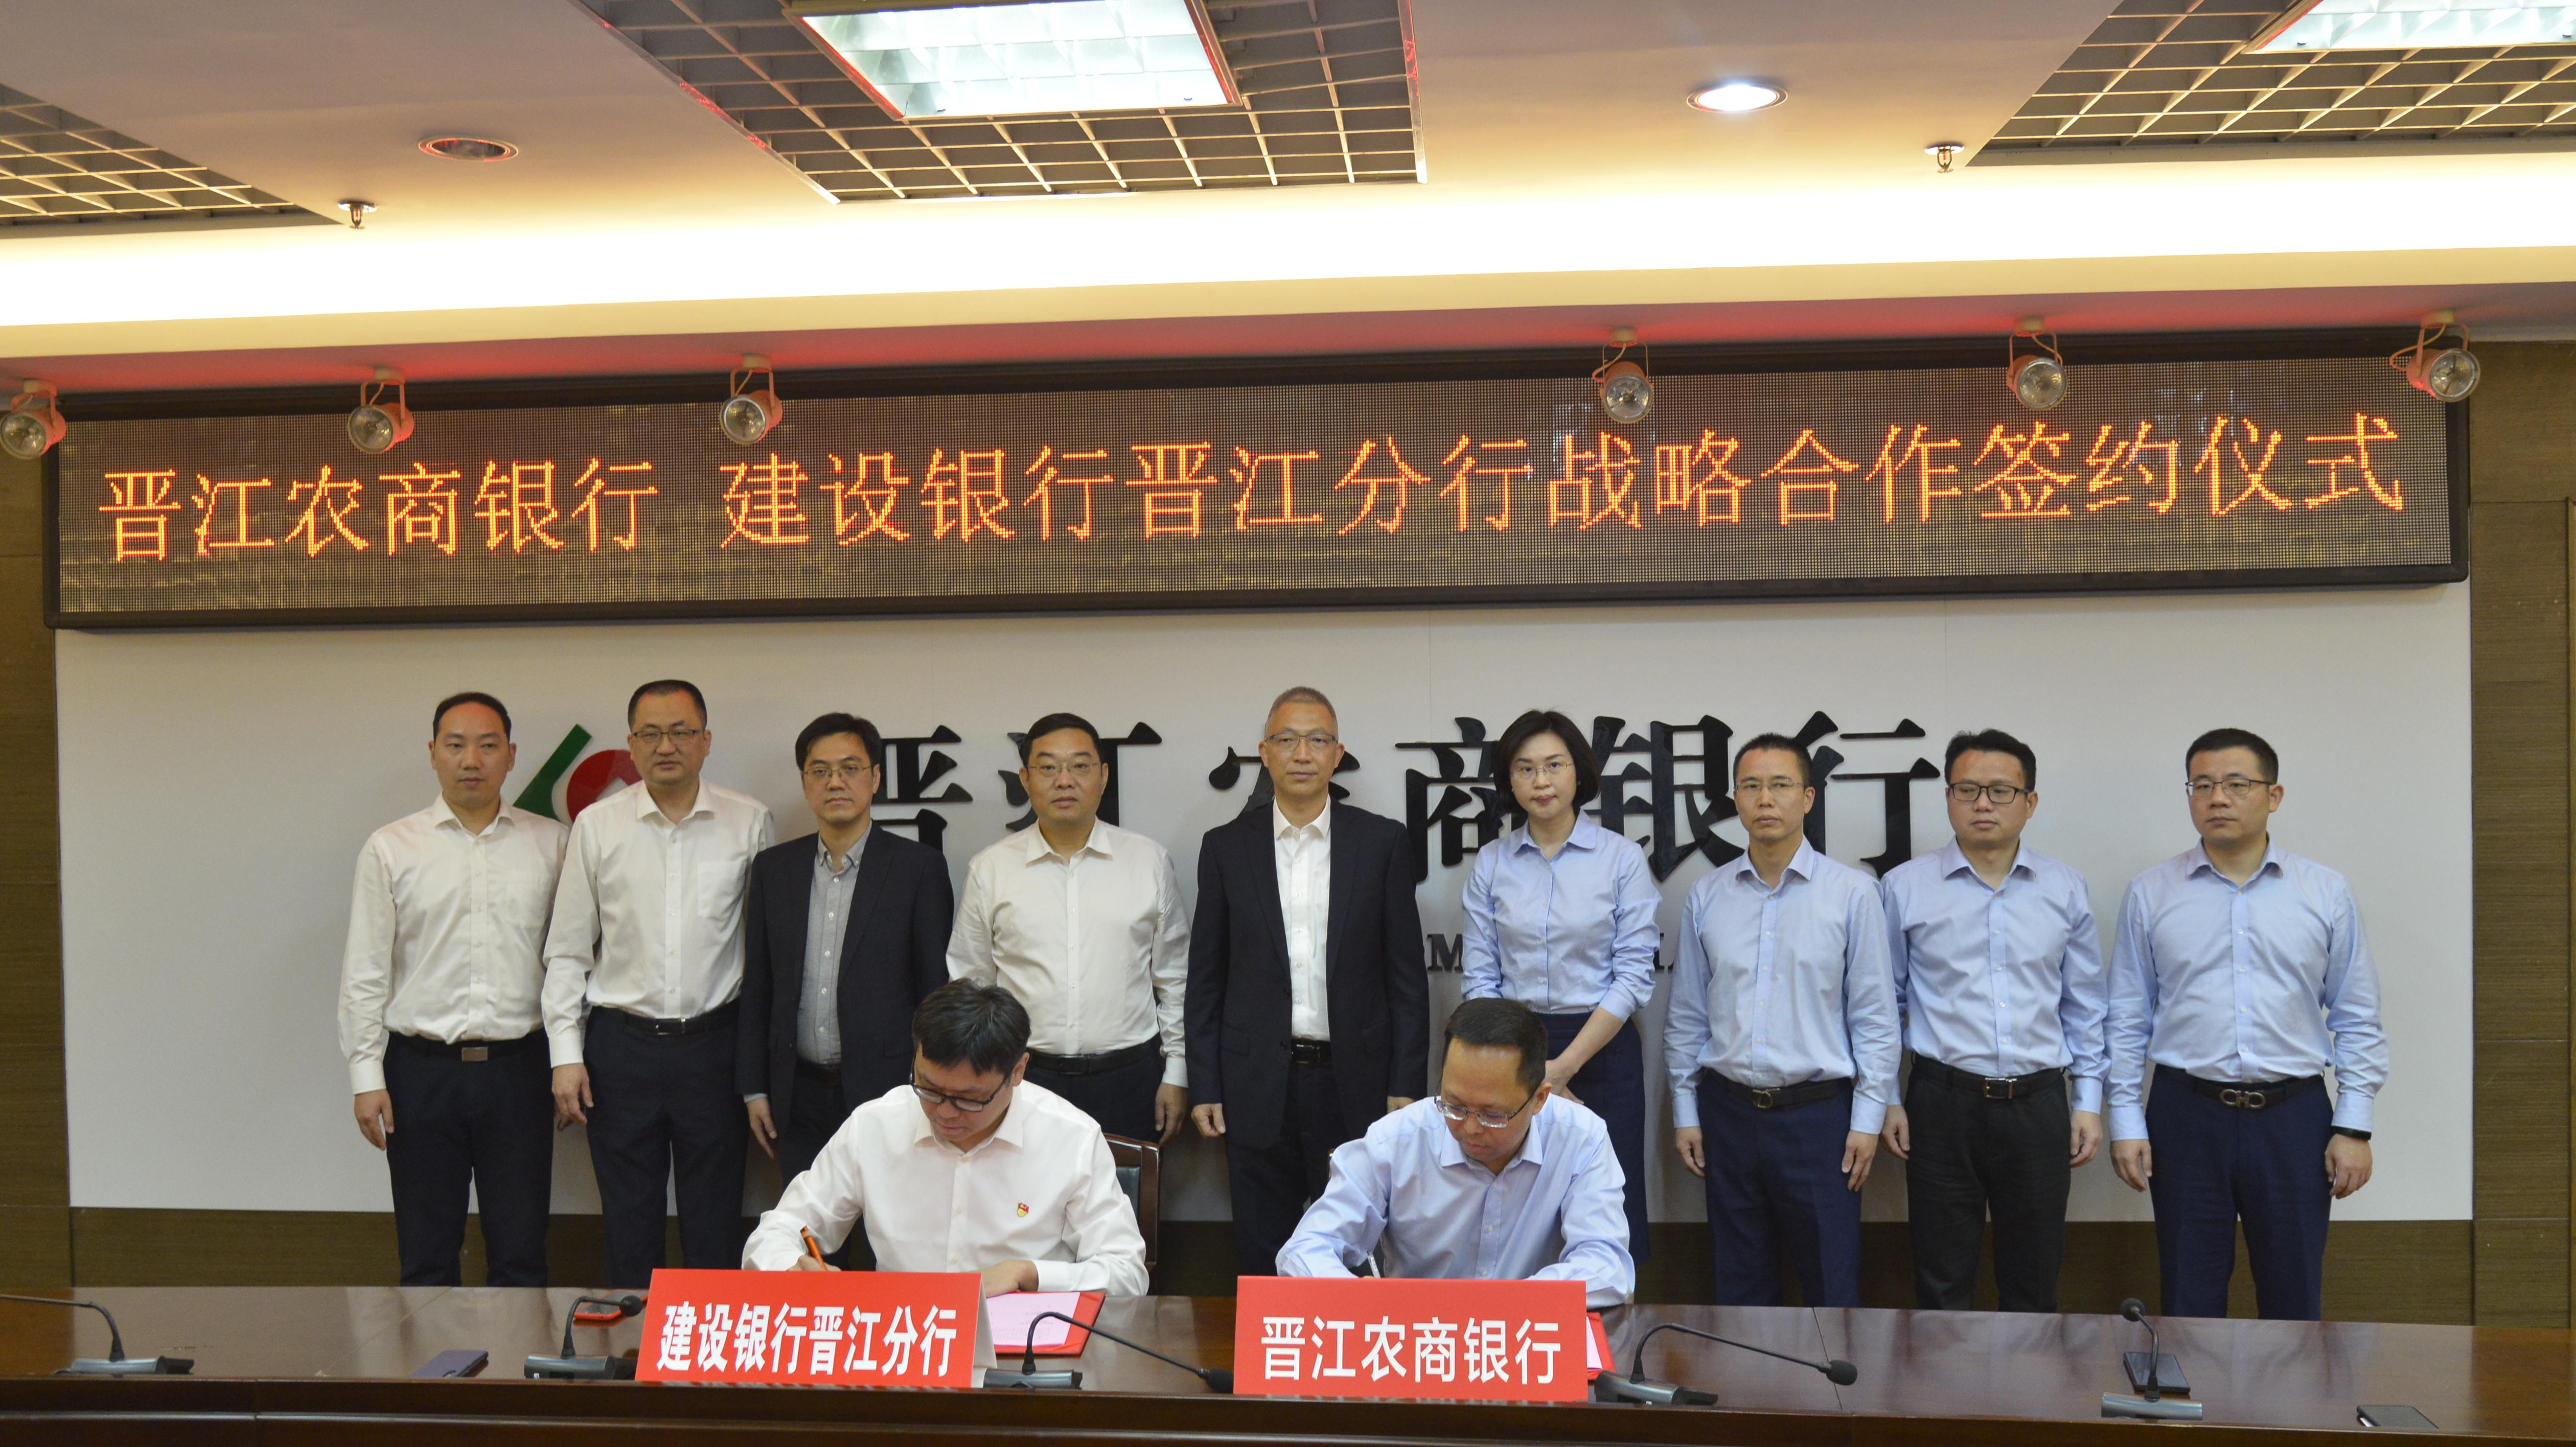 晋江农商银行与中国建设银行晋江分行签署战略合作协议